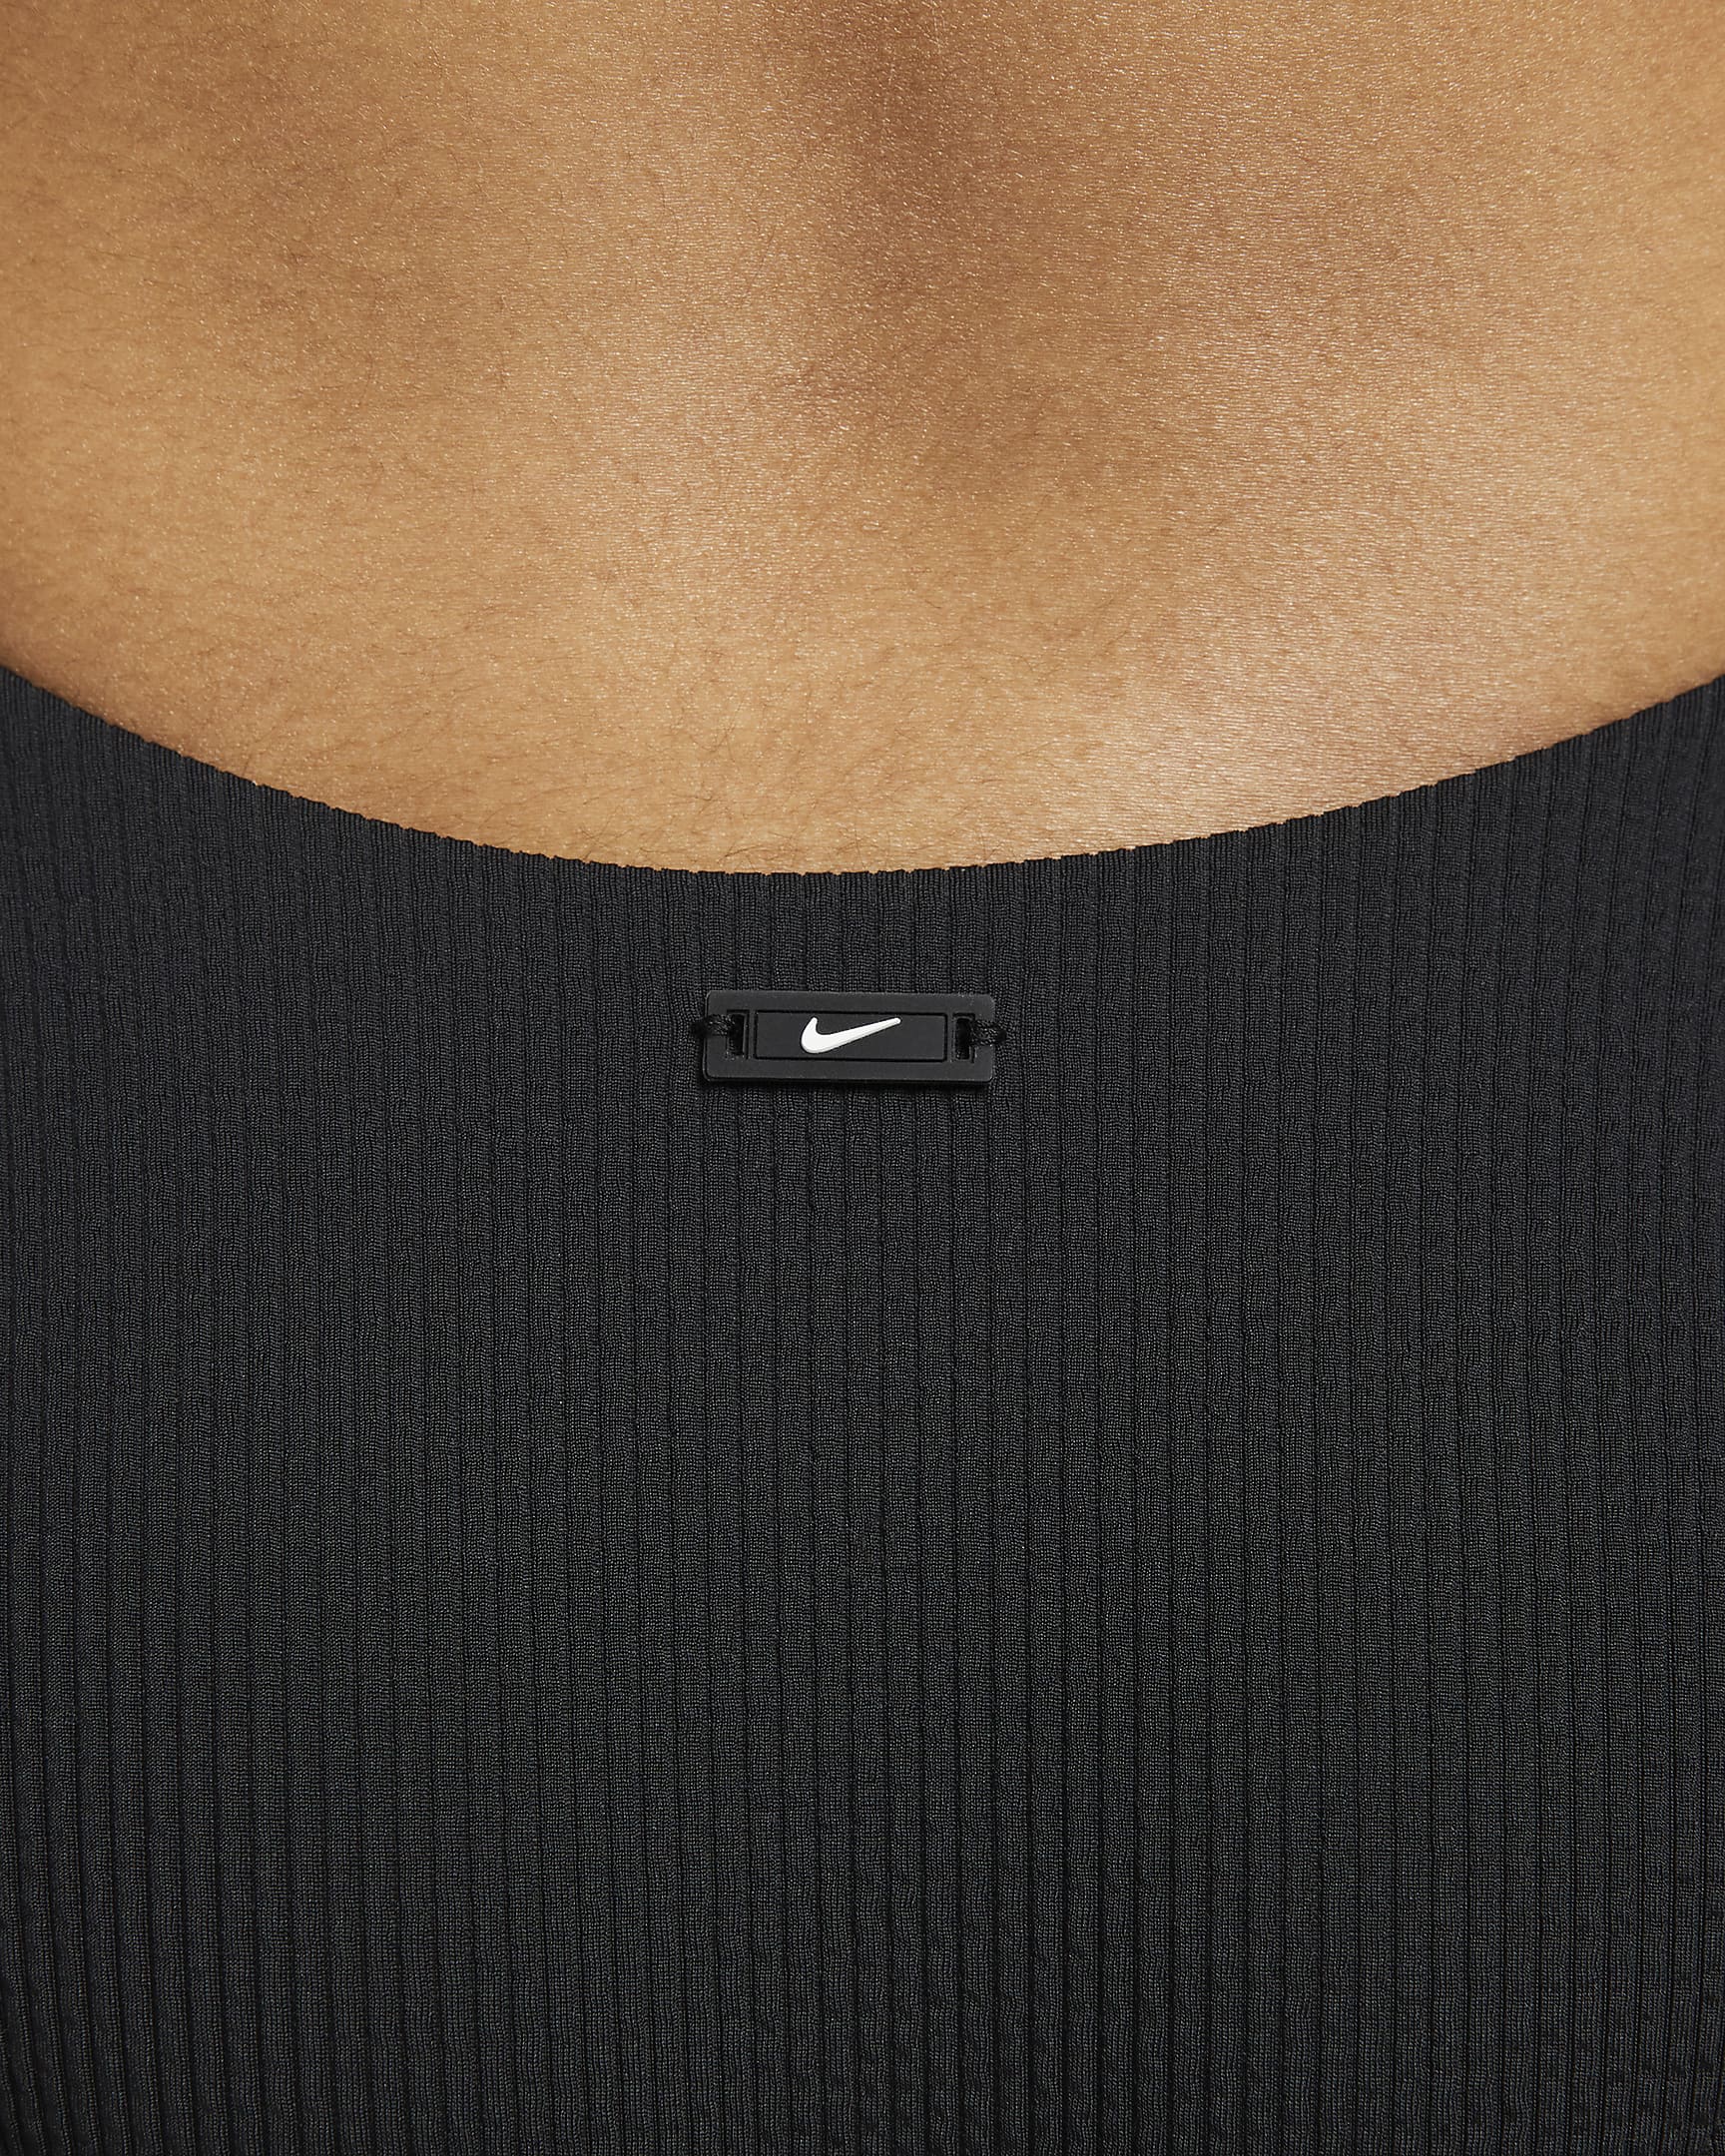 Nike-badedragt med krydsryg til kvinder - sort/hvid